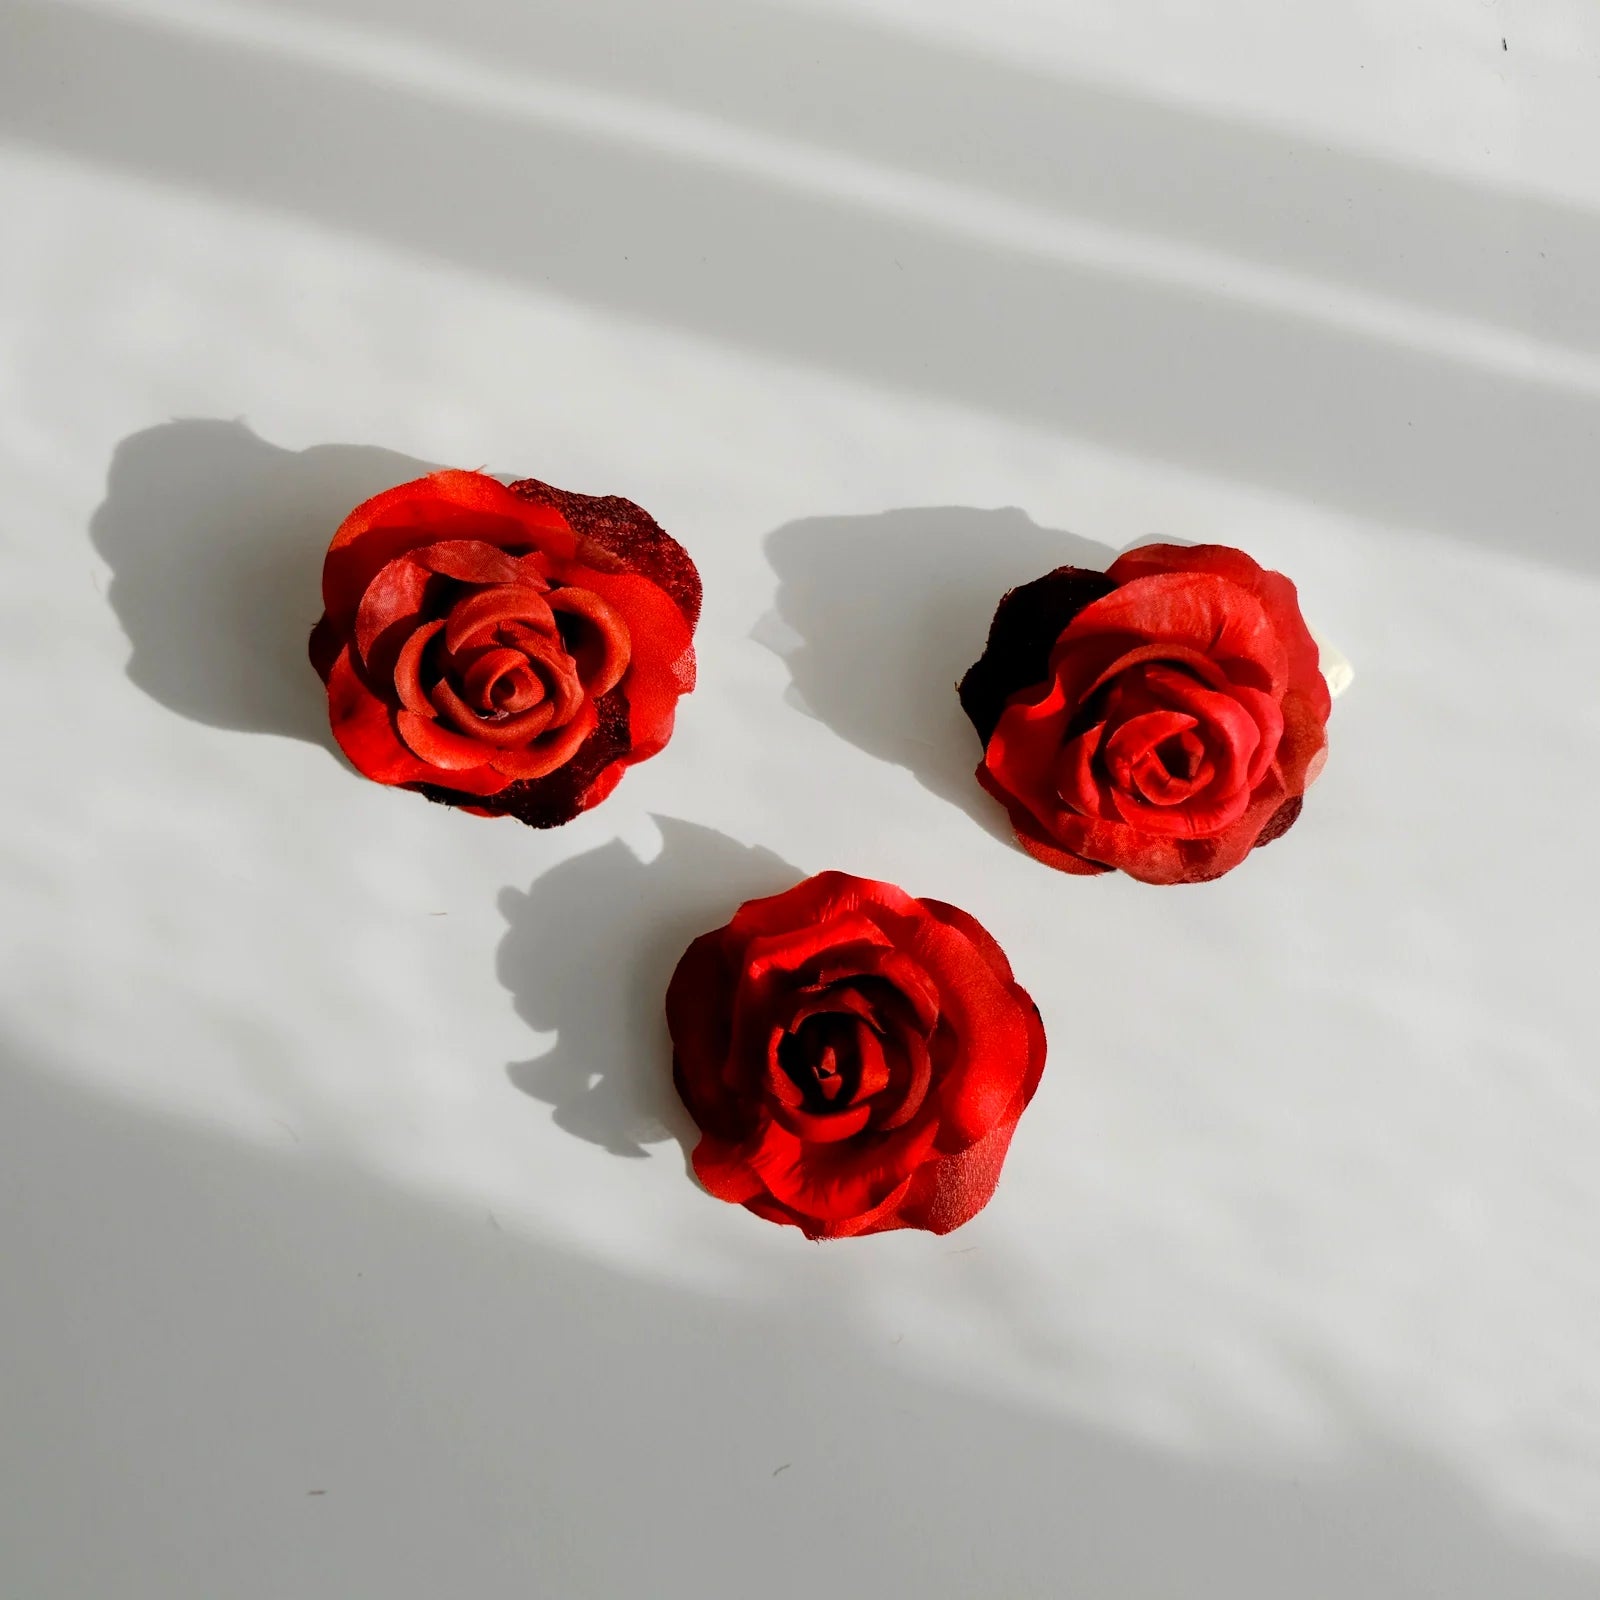 tre broscher som ar formade till roda rosor av aterbrukat sidentyg